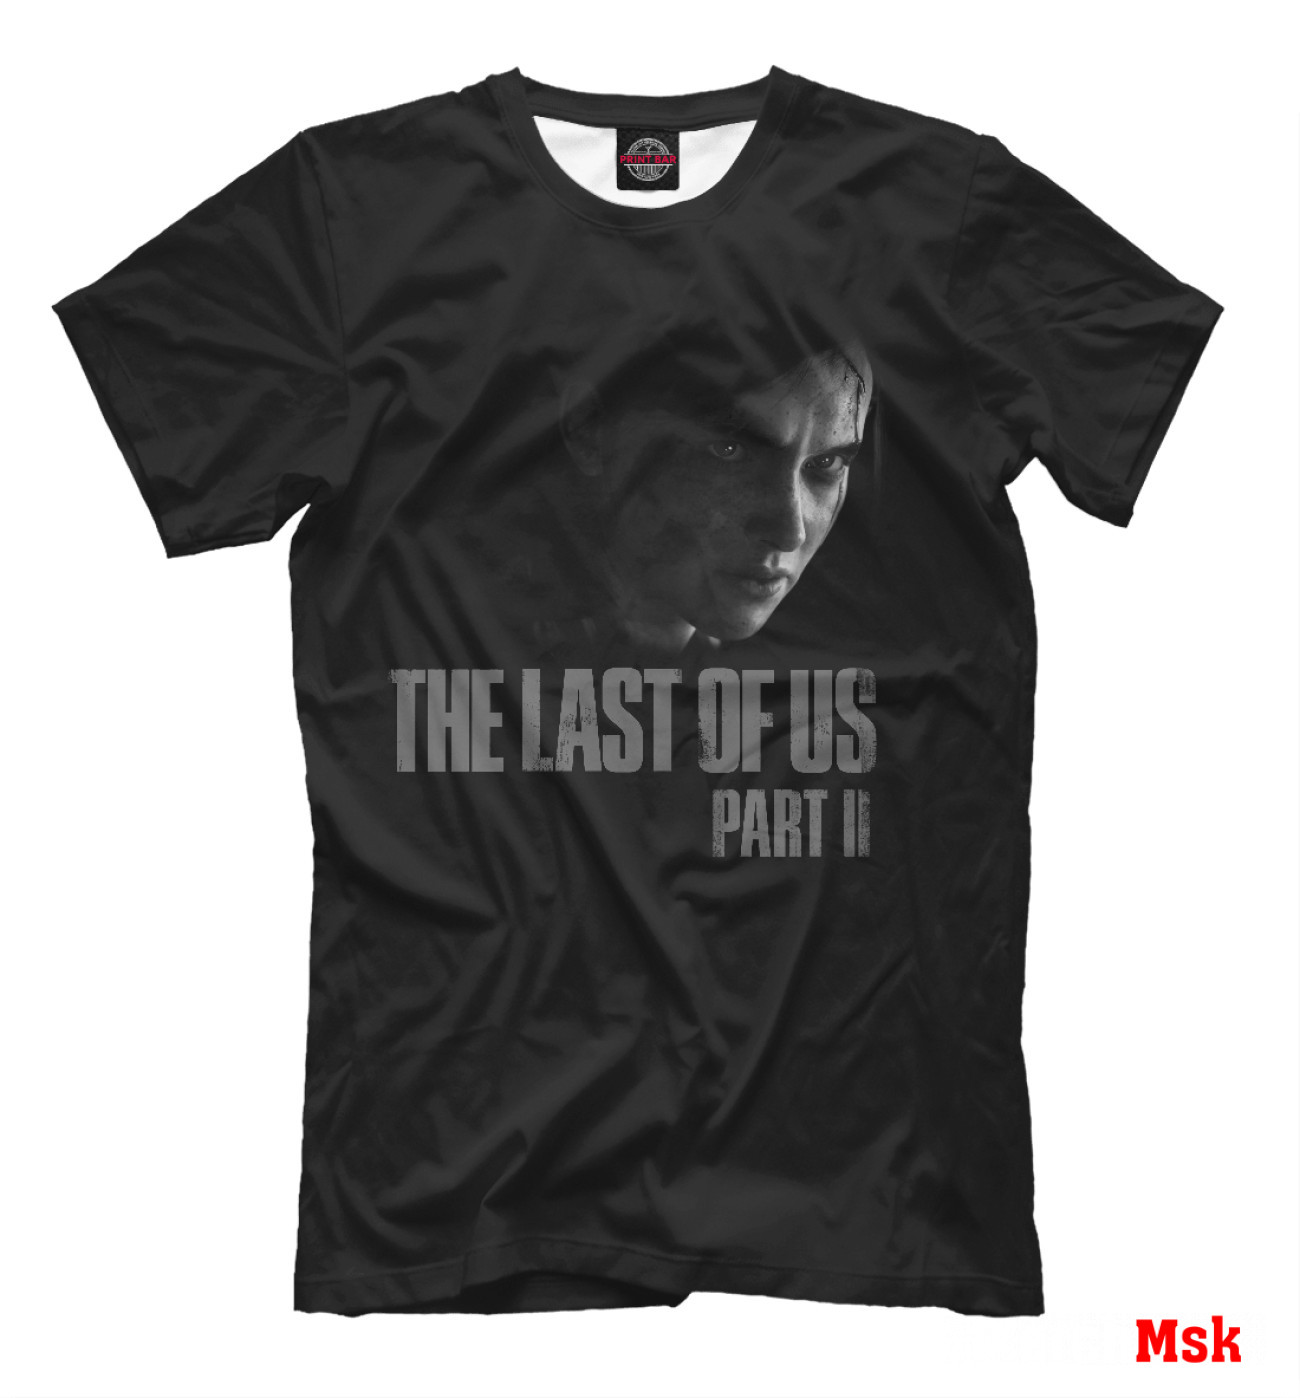 Мужская Футболка The Last of Us 2, артикул: RPG-339173-fut-2